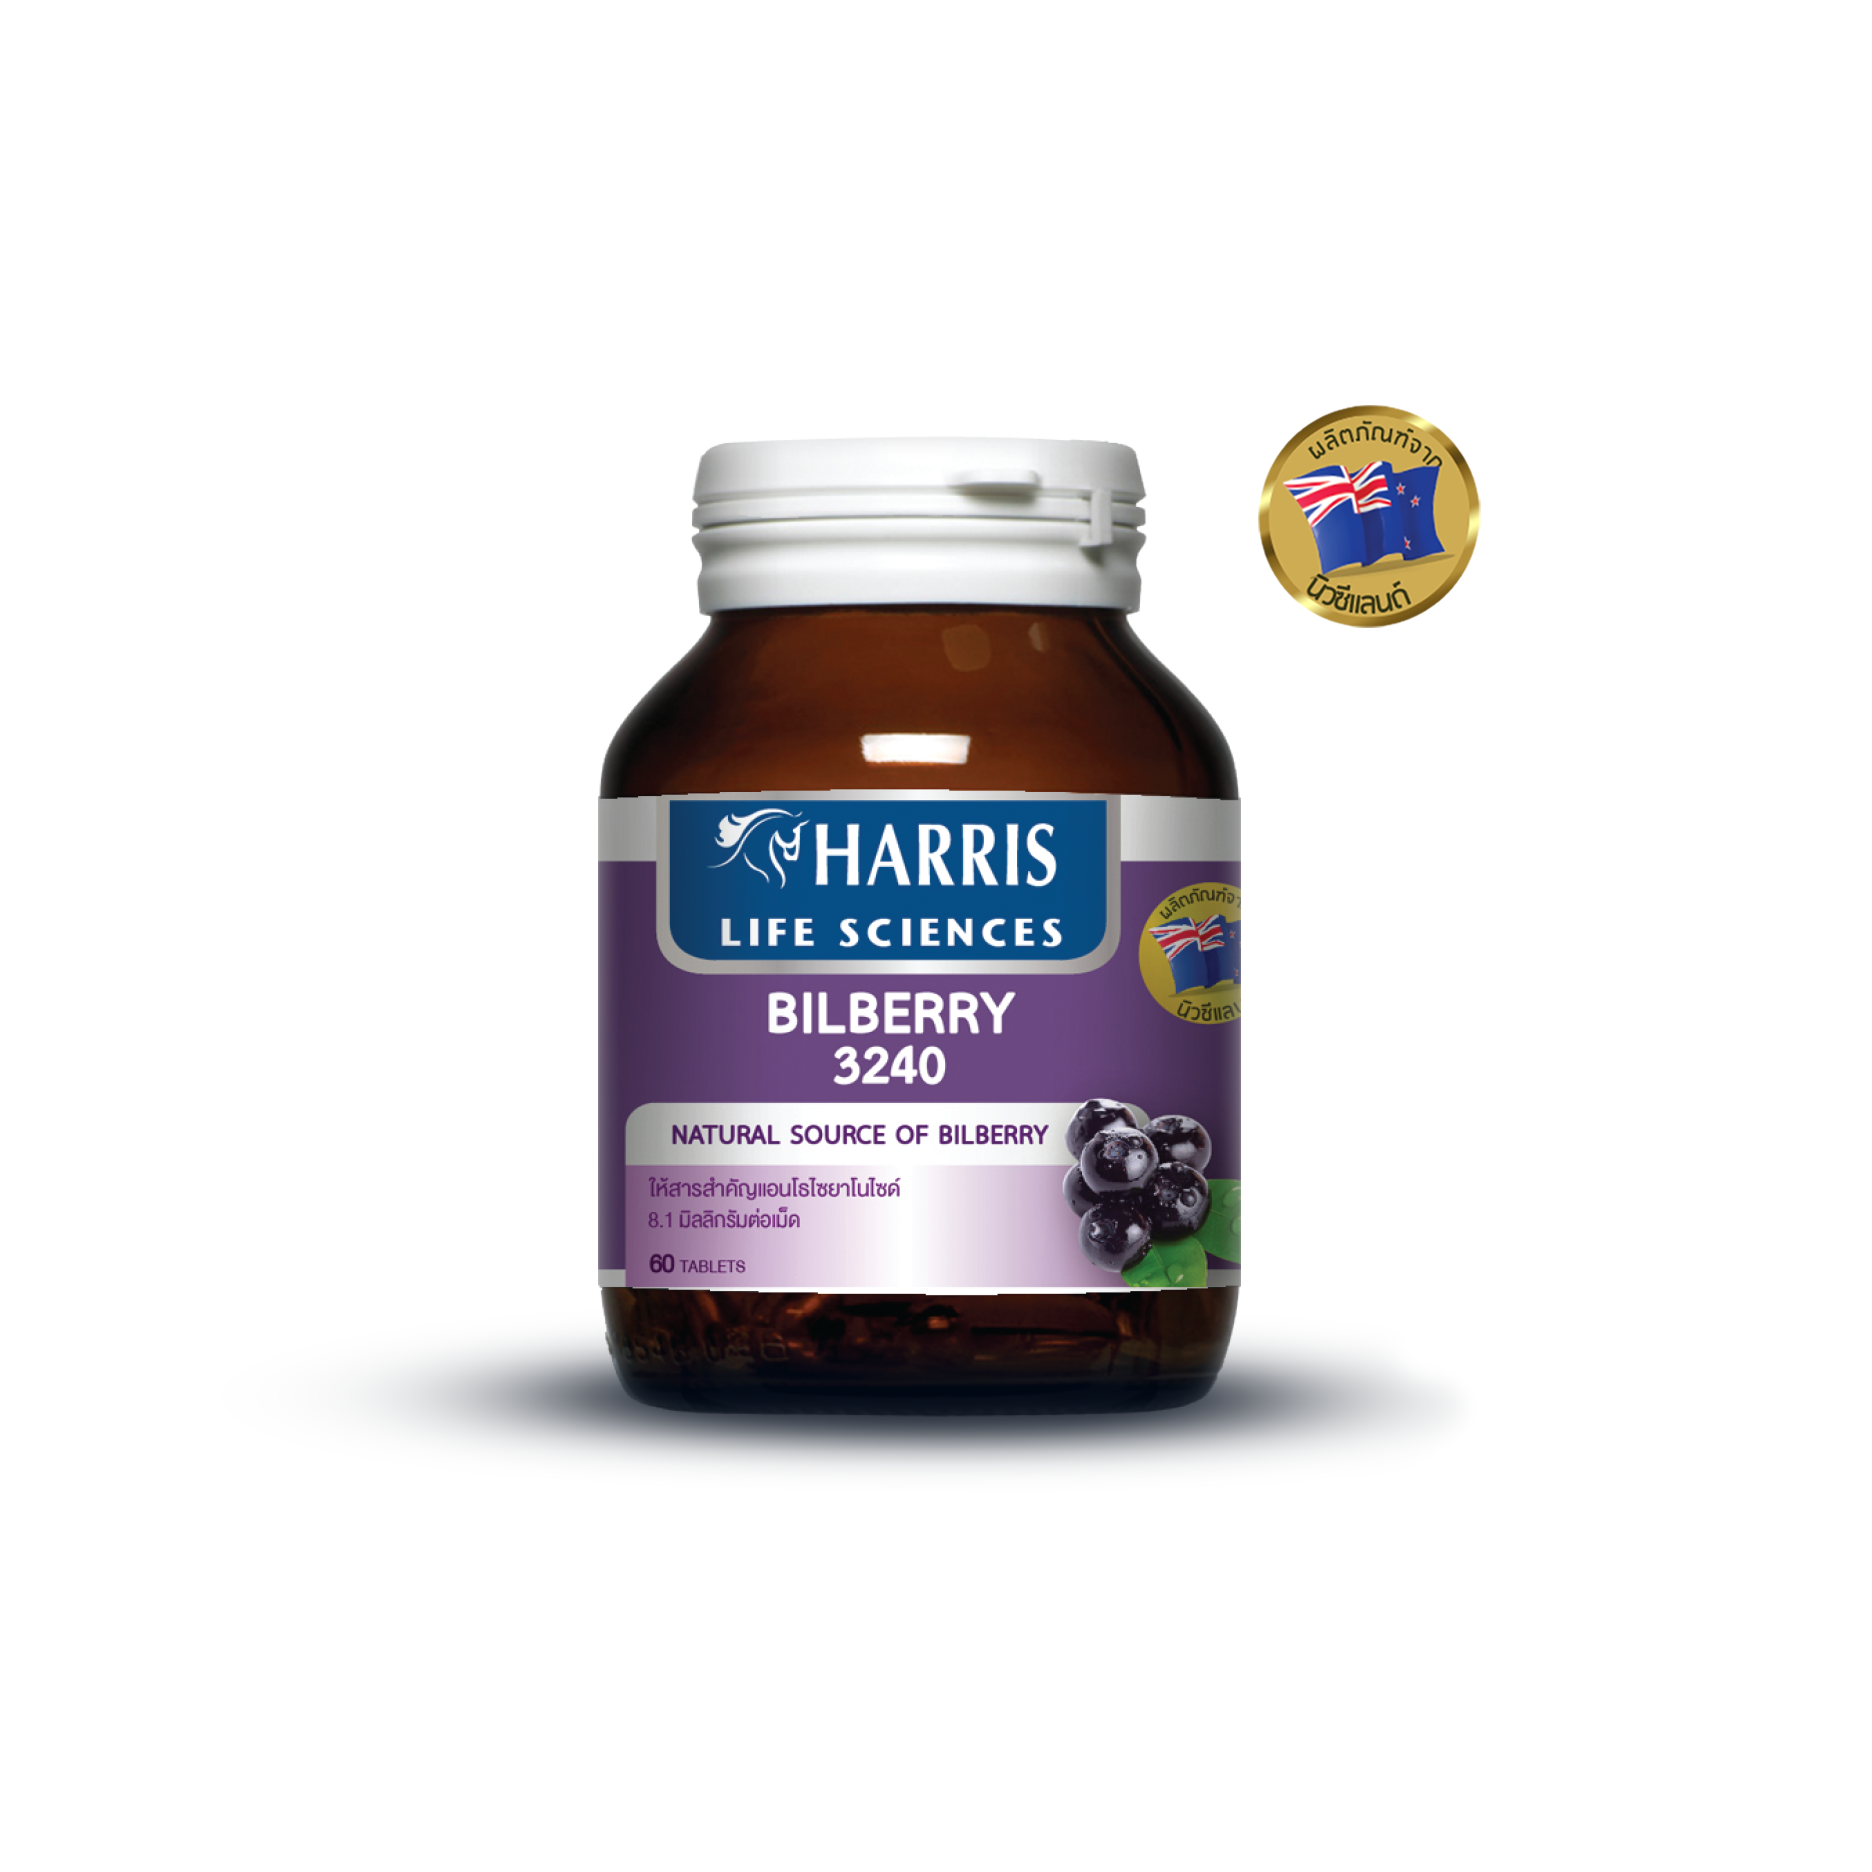 HARRIS Bilberry 3240 | บิลเบอร์รี่สกัด ดูแลสุขภาพของดวงตา 3,240 mg จากนิวซีแลนด์ (60 เม็ด) | แถมฟรี Mask KF94